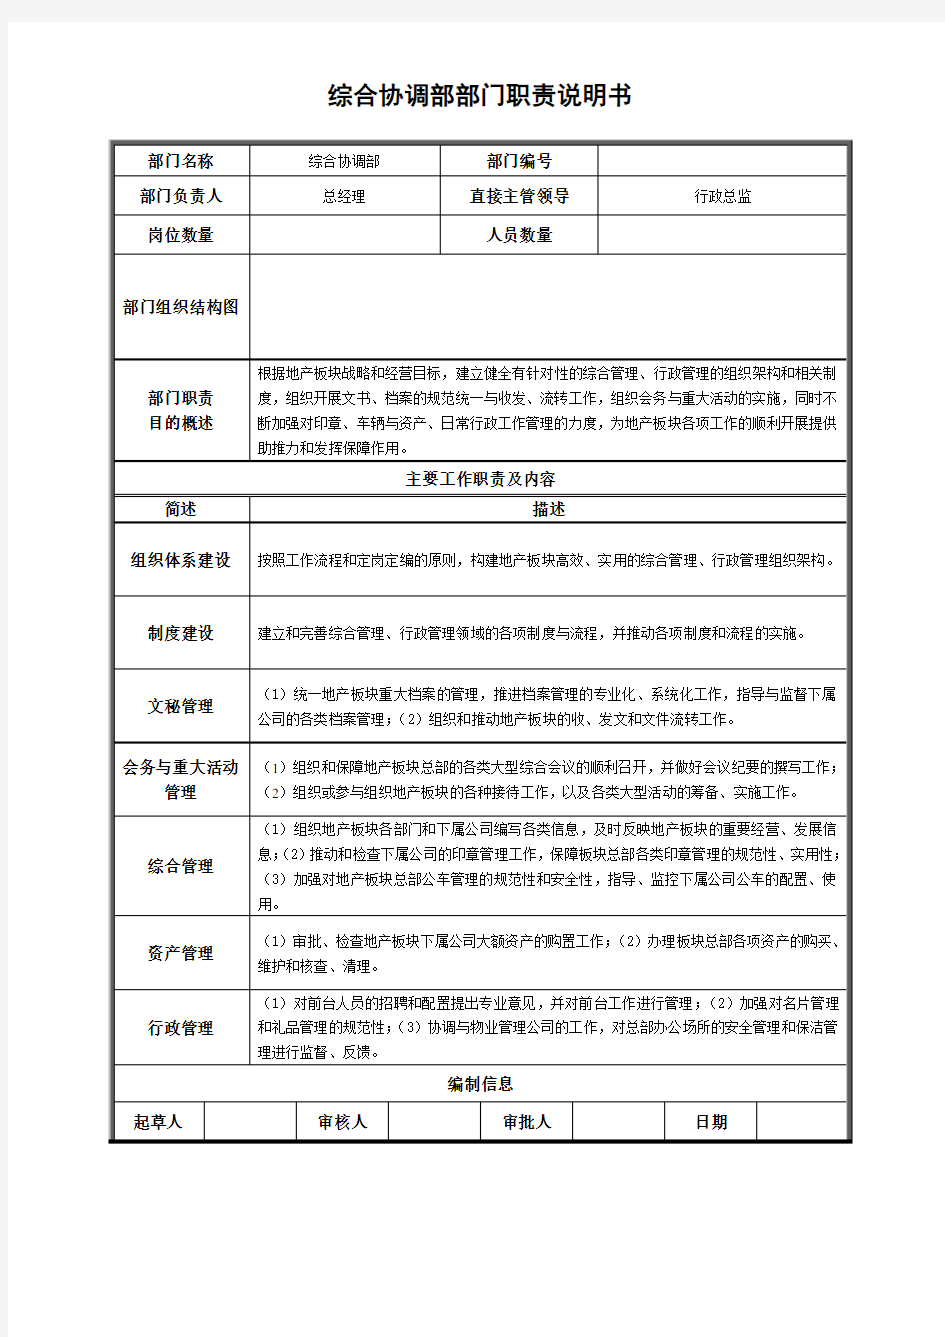 正略钧策—上海上实集团—综合协调部职责说明书